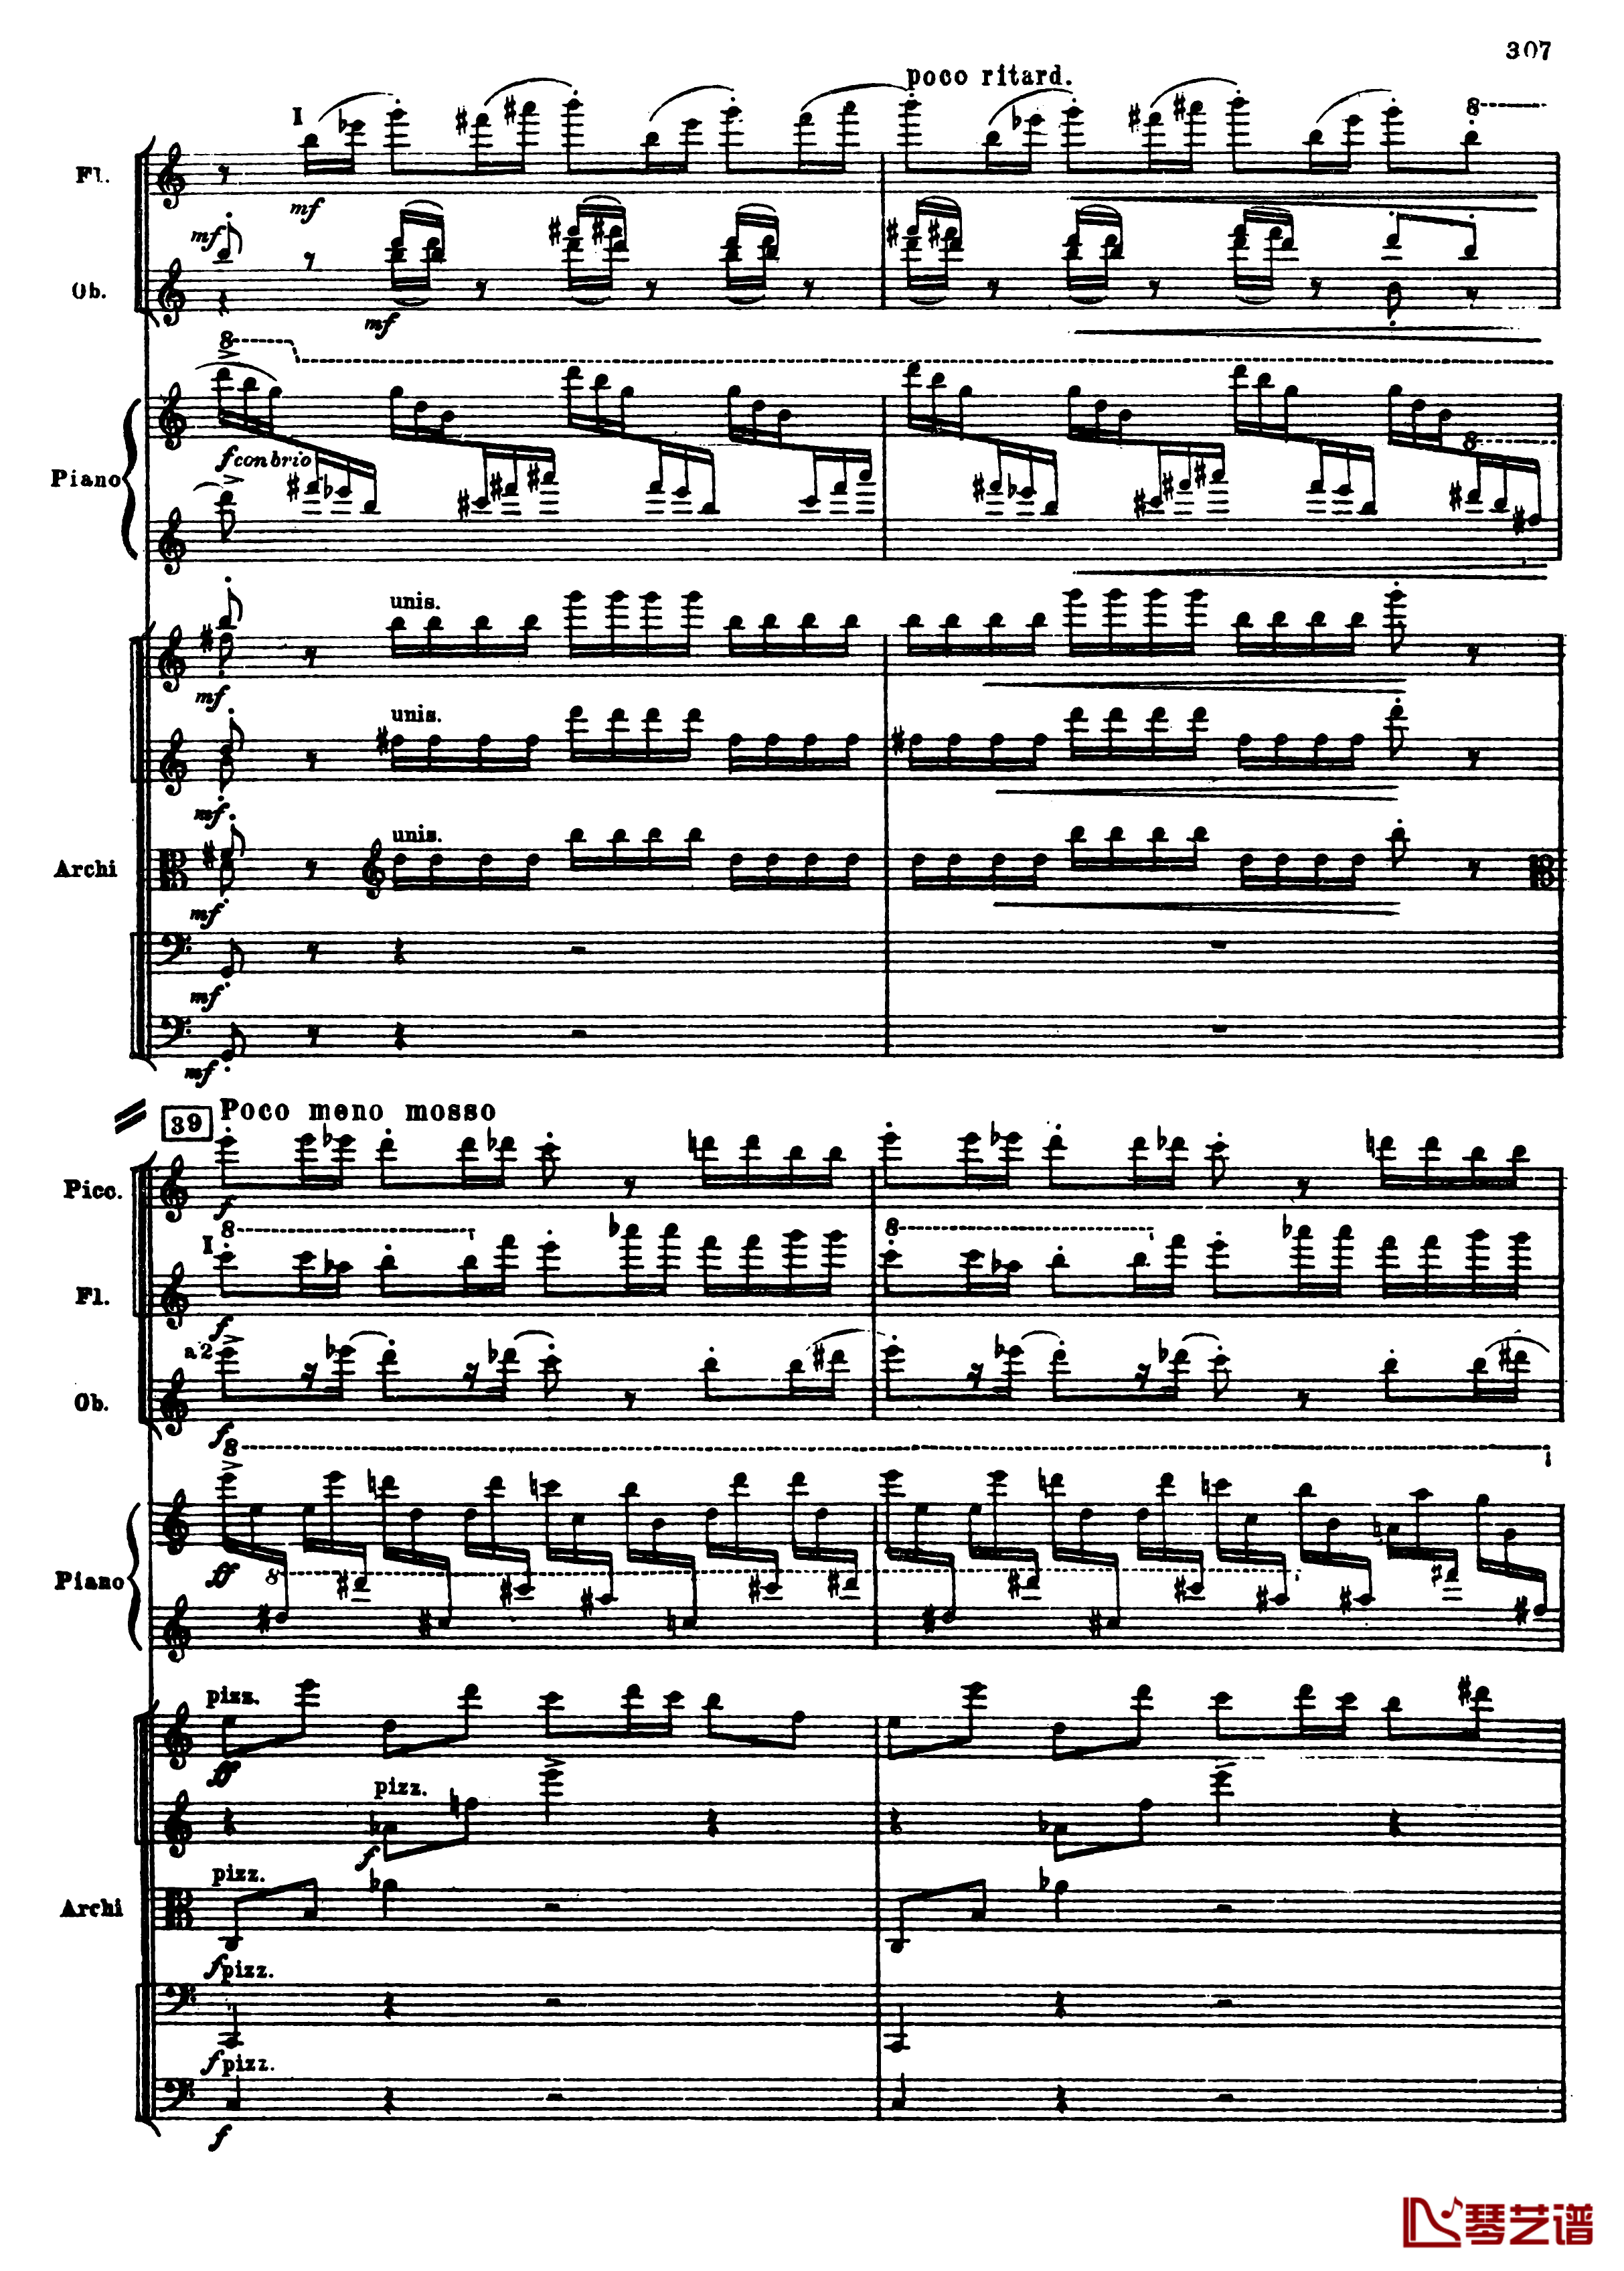 普罗科菲耶夫第三钢琴协奏曲钢琴谱-总谱-普罗科非耶夫39